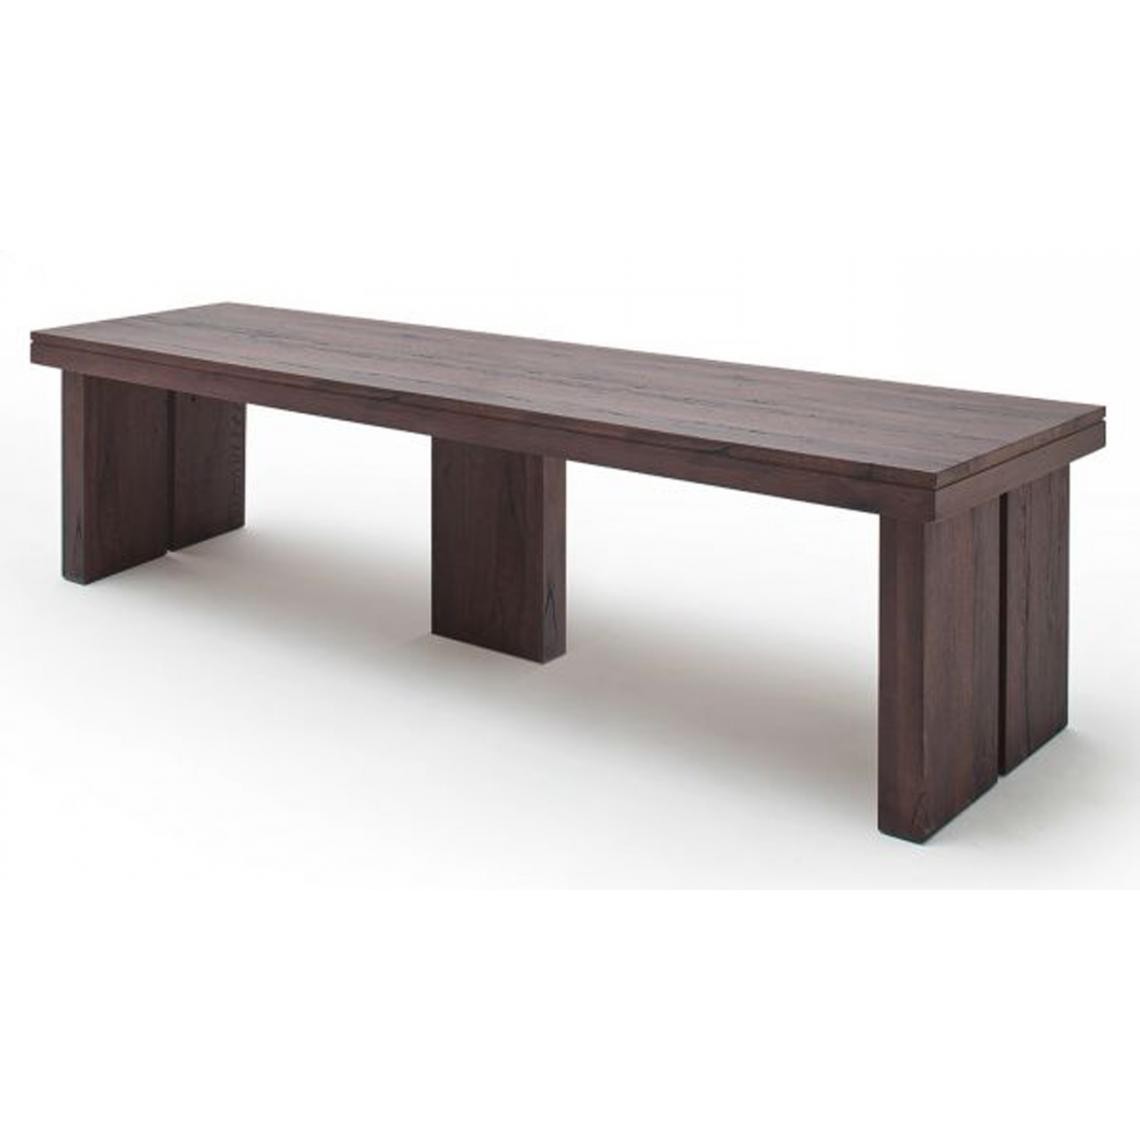 Pegane - Table à manger rectangulaire en chêne massif patiné laqué mat - L.300 x H.76 x P.120 cm - Tables à manger